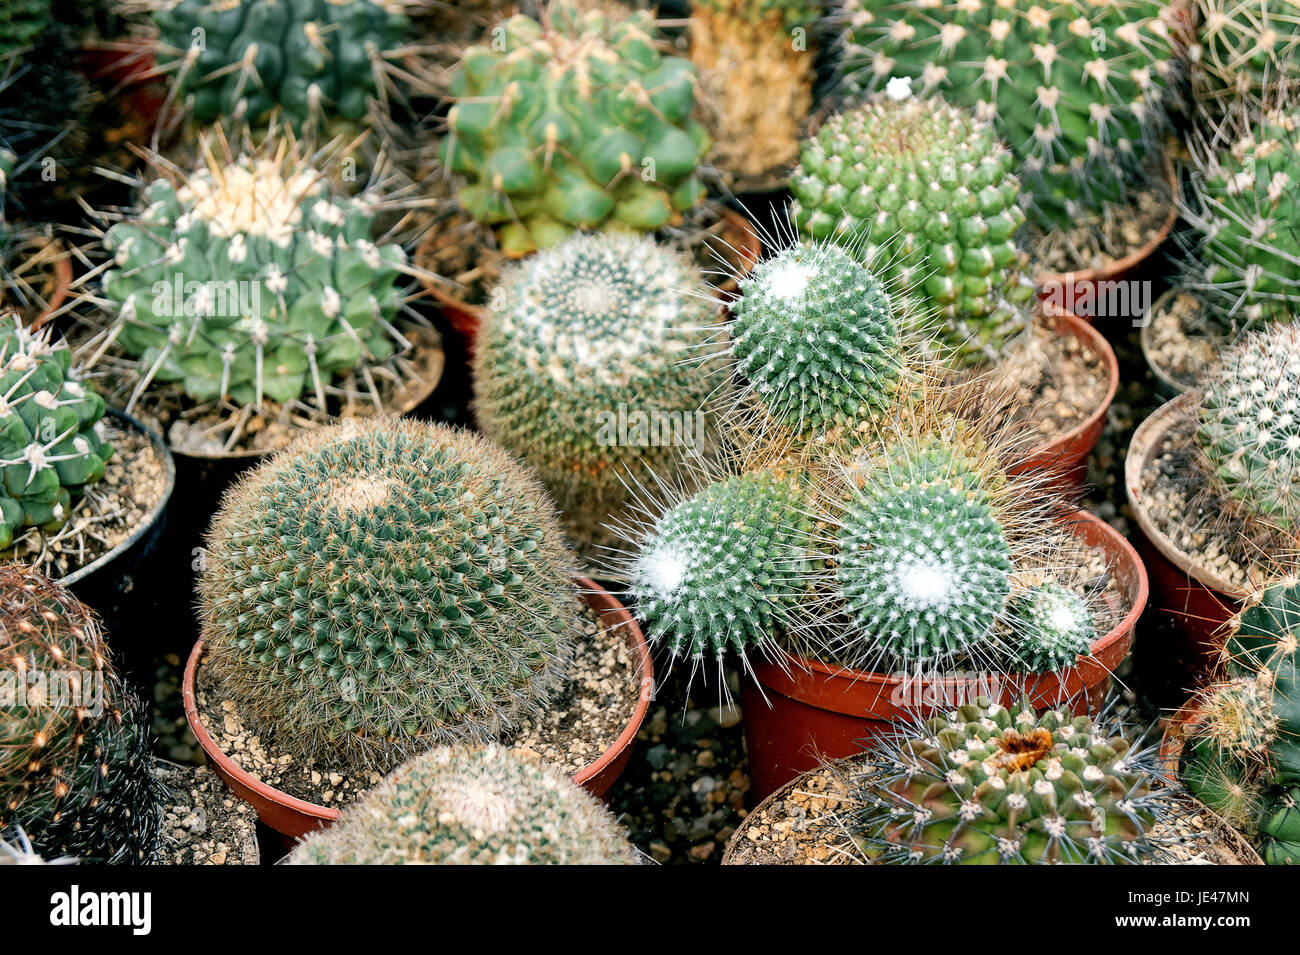 various cactus Stock Photo